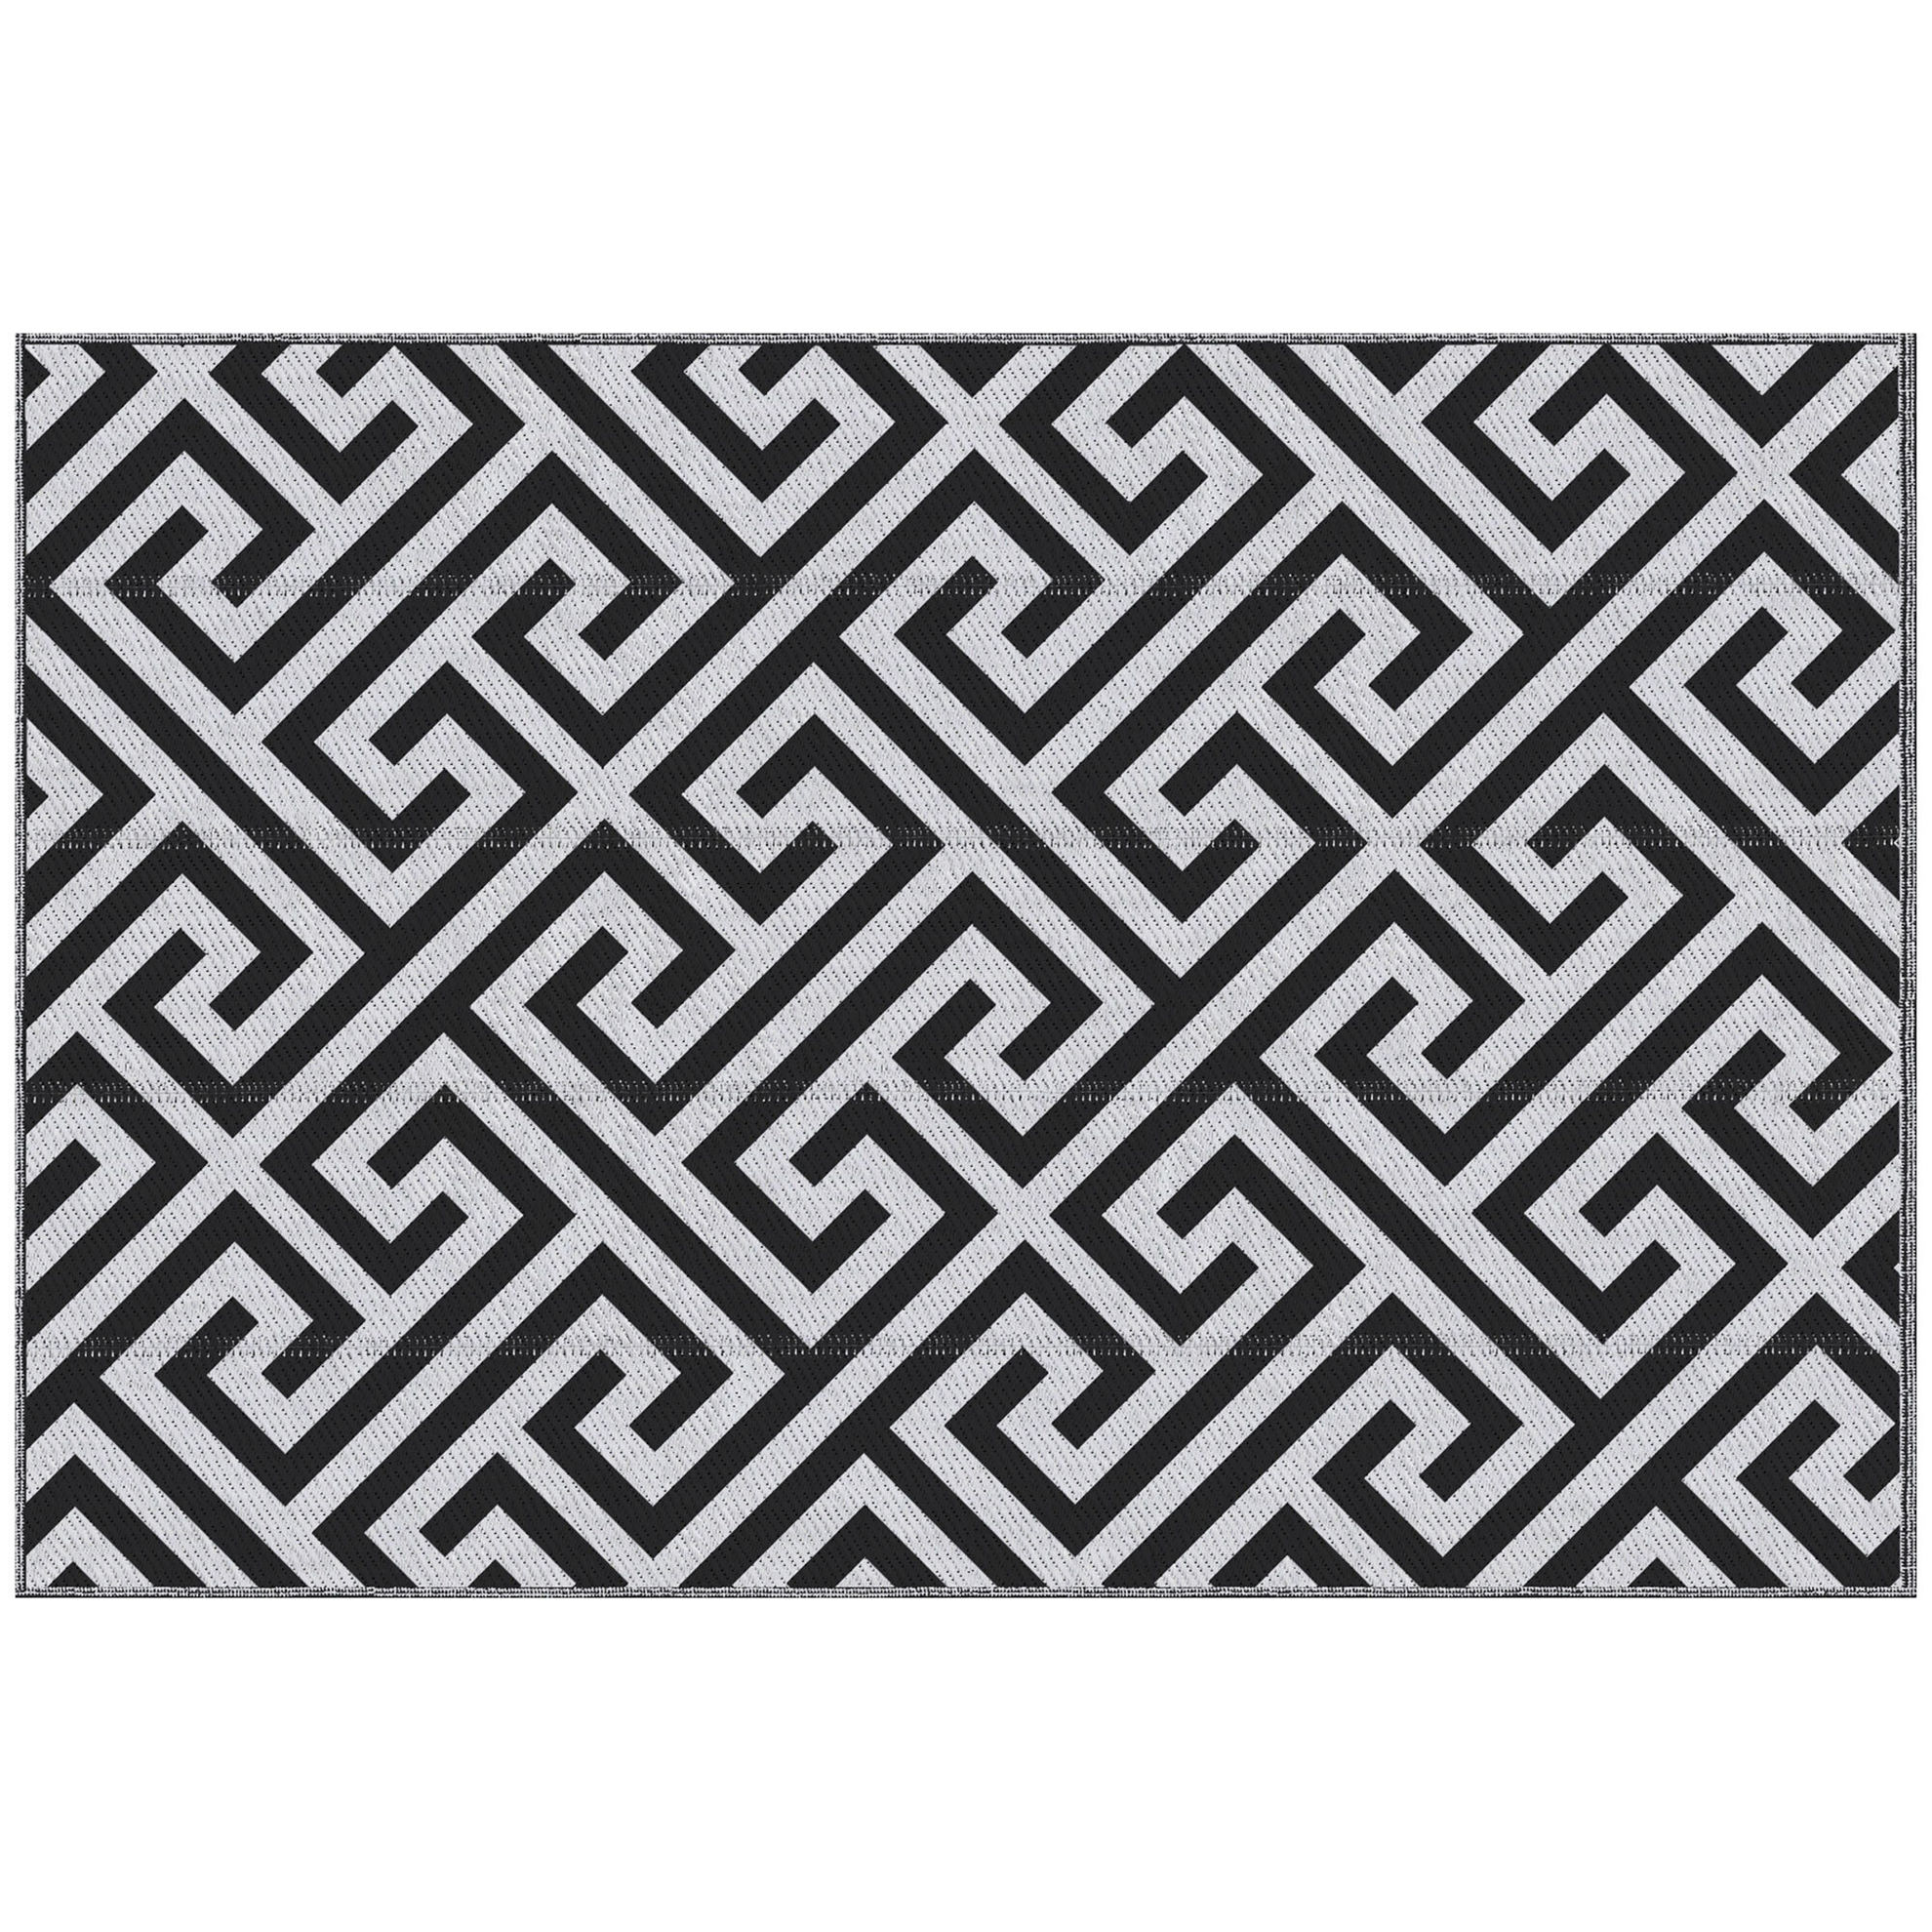 Outdoor-Teppich mit doppelseitigem Design schwarz, weiß Farbe: mehrfarbig |  Weltbild.de